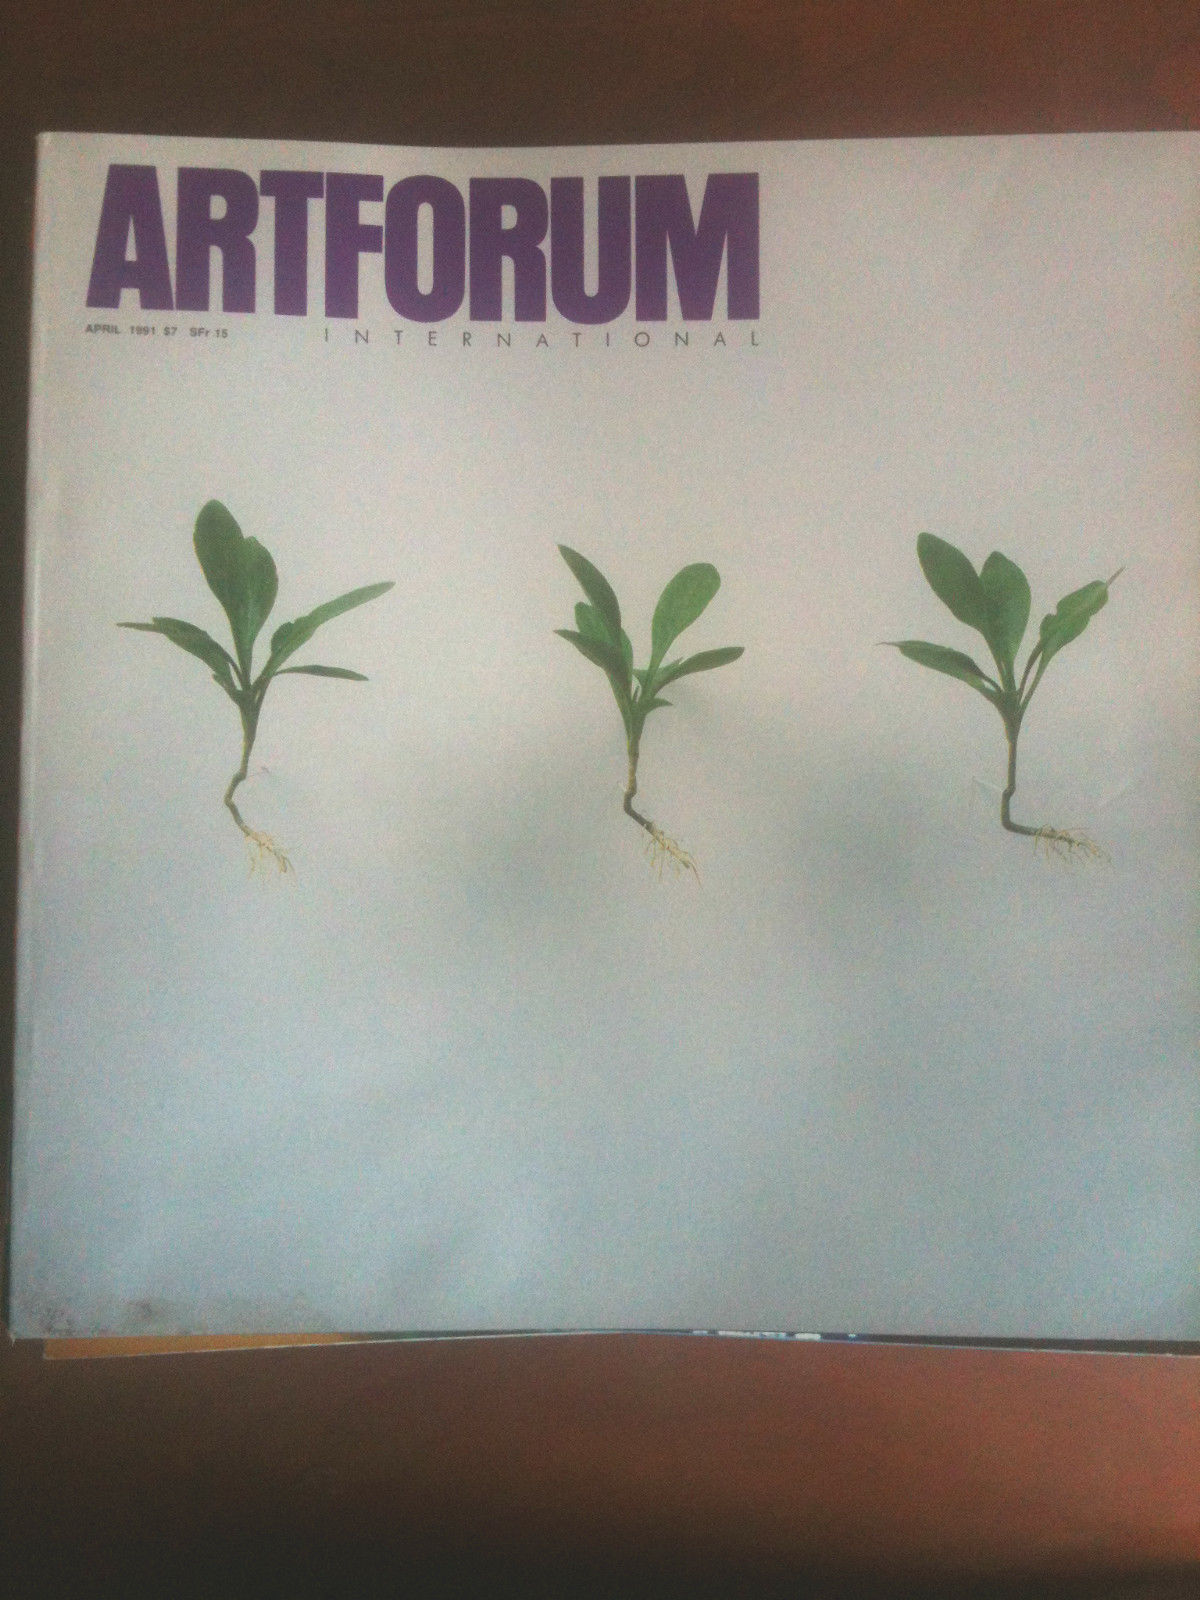 Artforum April 1991 Cover: Vincent Shine